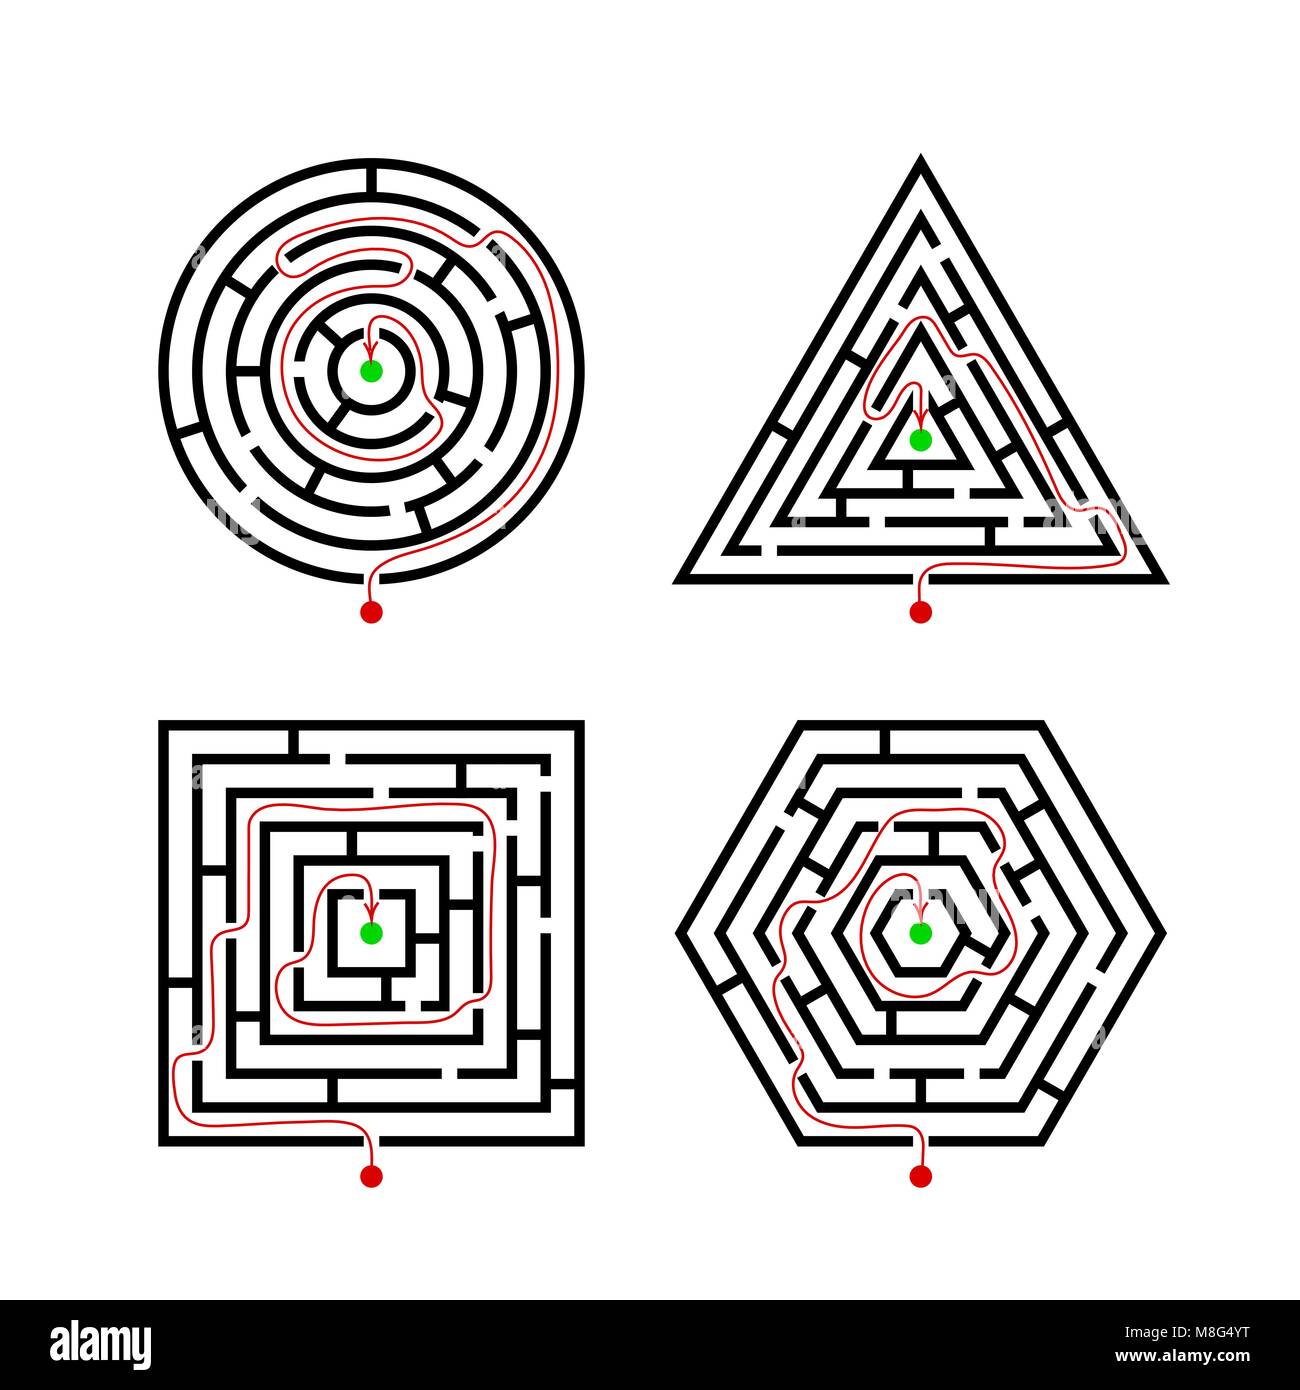 Jeu de labyrinthe de différentes formes de jeu avec avec le marqueur route appropriée. Labyrinthe carré, rond, triangle et l'hexagone logique conce jeu puzzle riddle Illustration de Vecteur